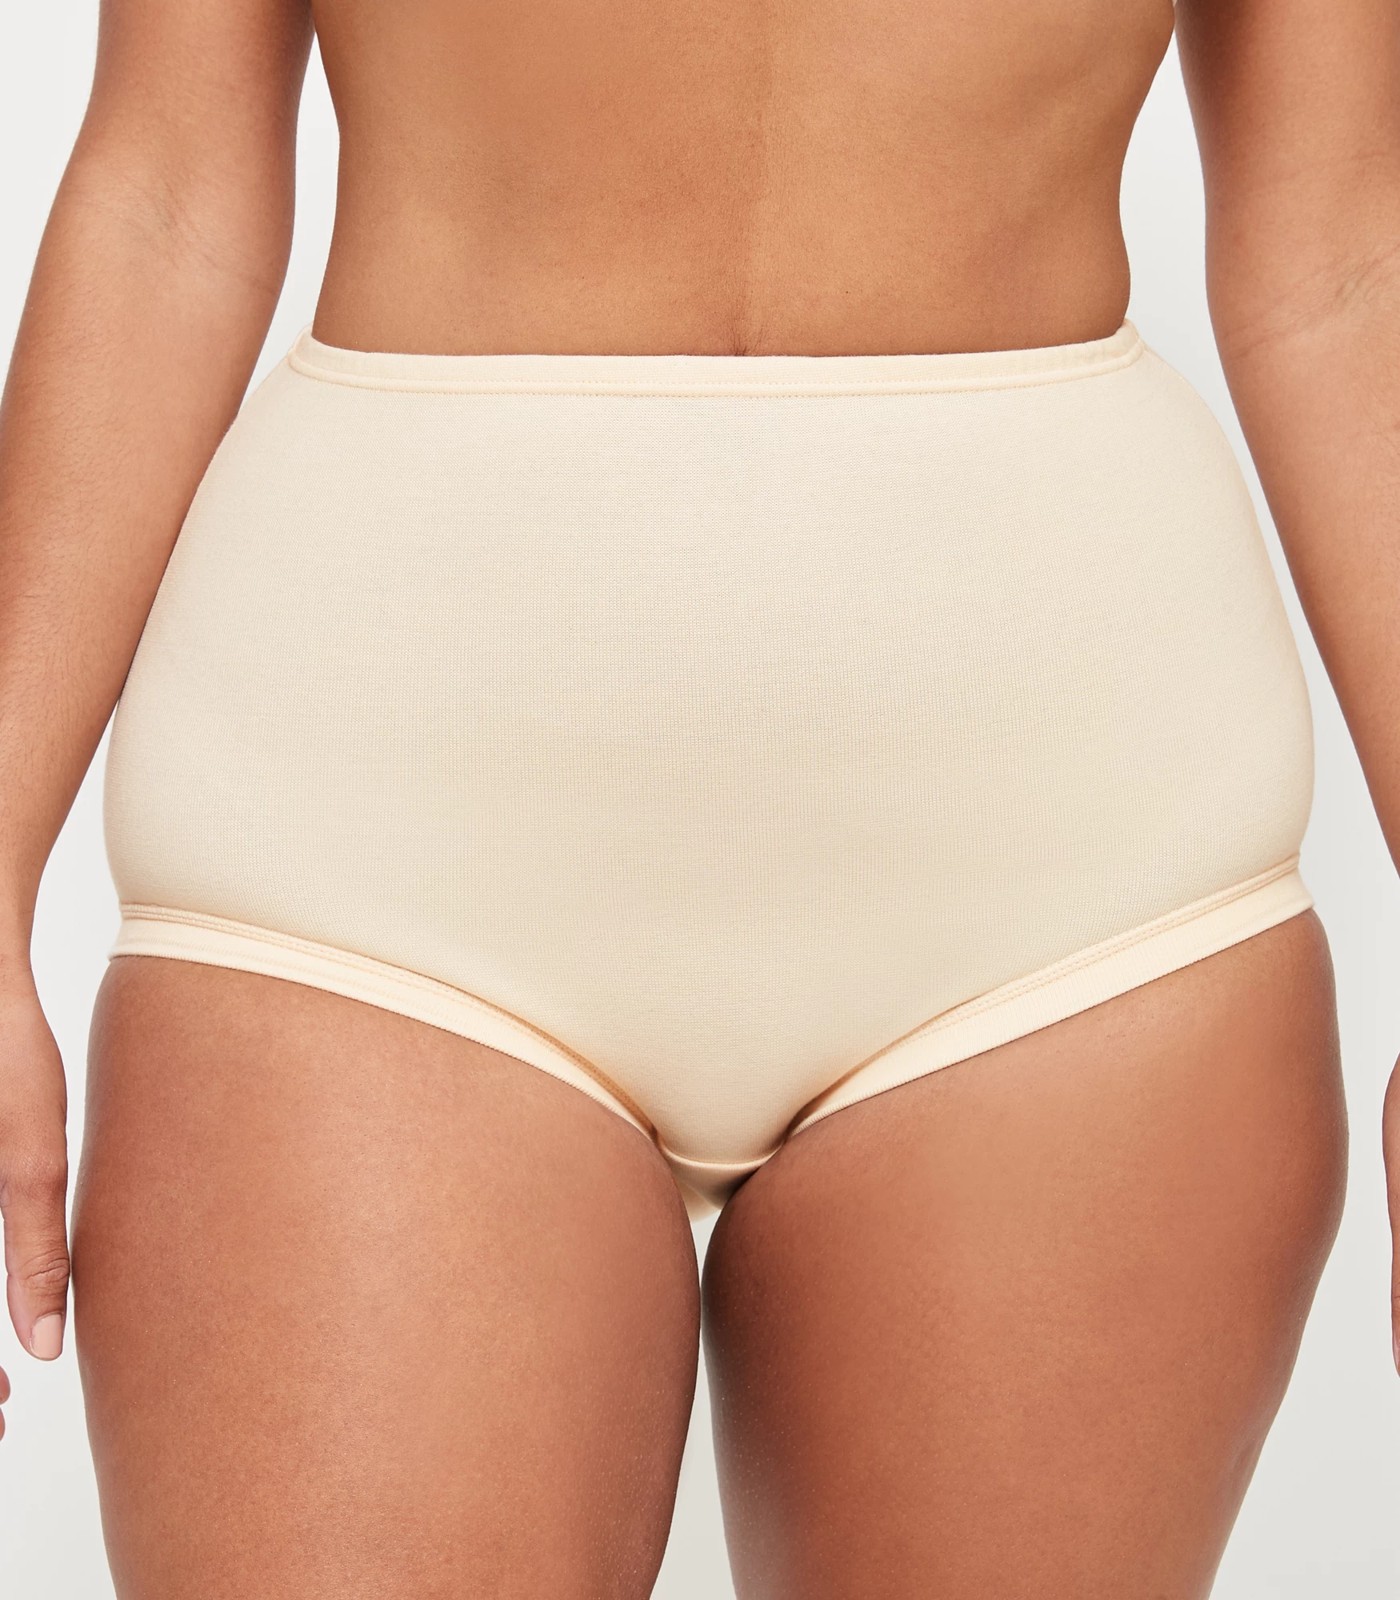 6-Pack of Bonds Women's Cottontails Plus Size Underwear